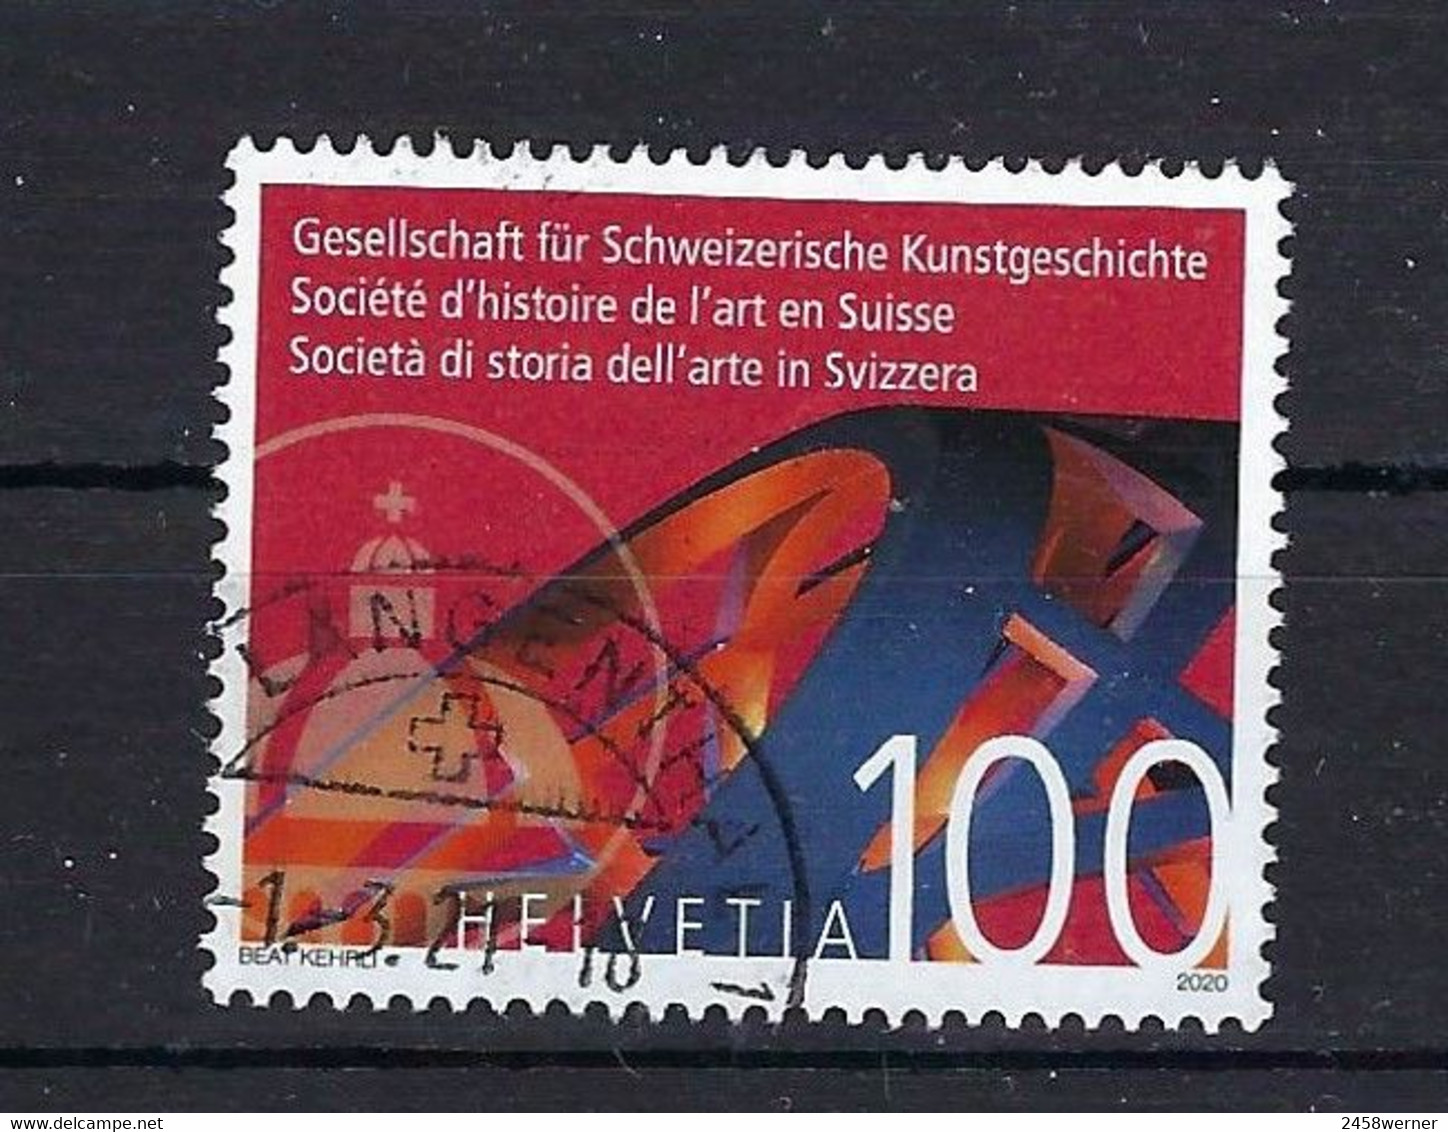 Schweiz 2020 Nr. 2655, 140 Jahre Gesellschaft Für Schweizerische Kunstgeschichte Gestempelt Used, Suisse Switzerland - Used Stamps